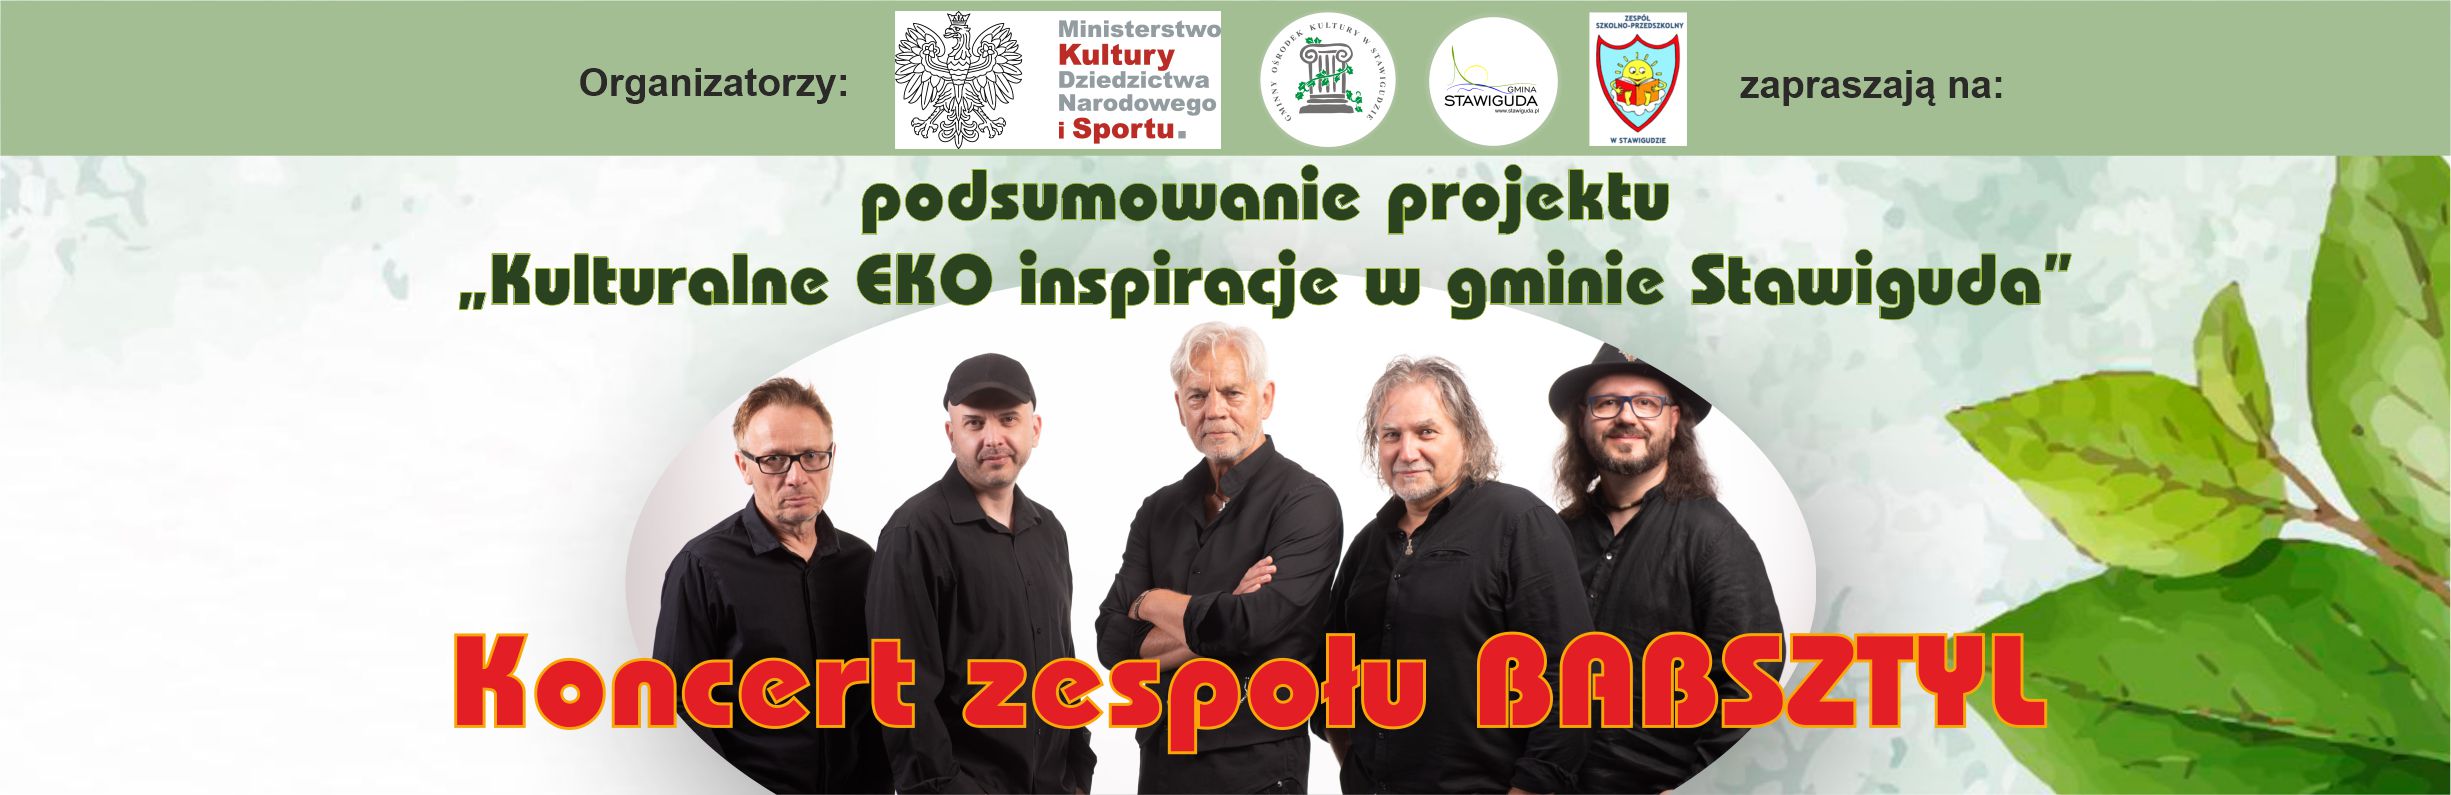 Koncert zespołu BABSZTYL oraz podsumowanie projektu "Kulturalne EKO inspiracje w gminie Stawiguda